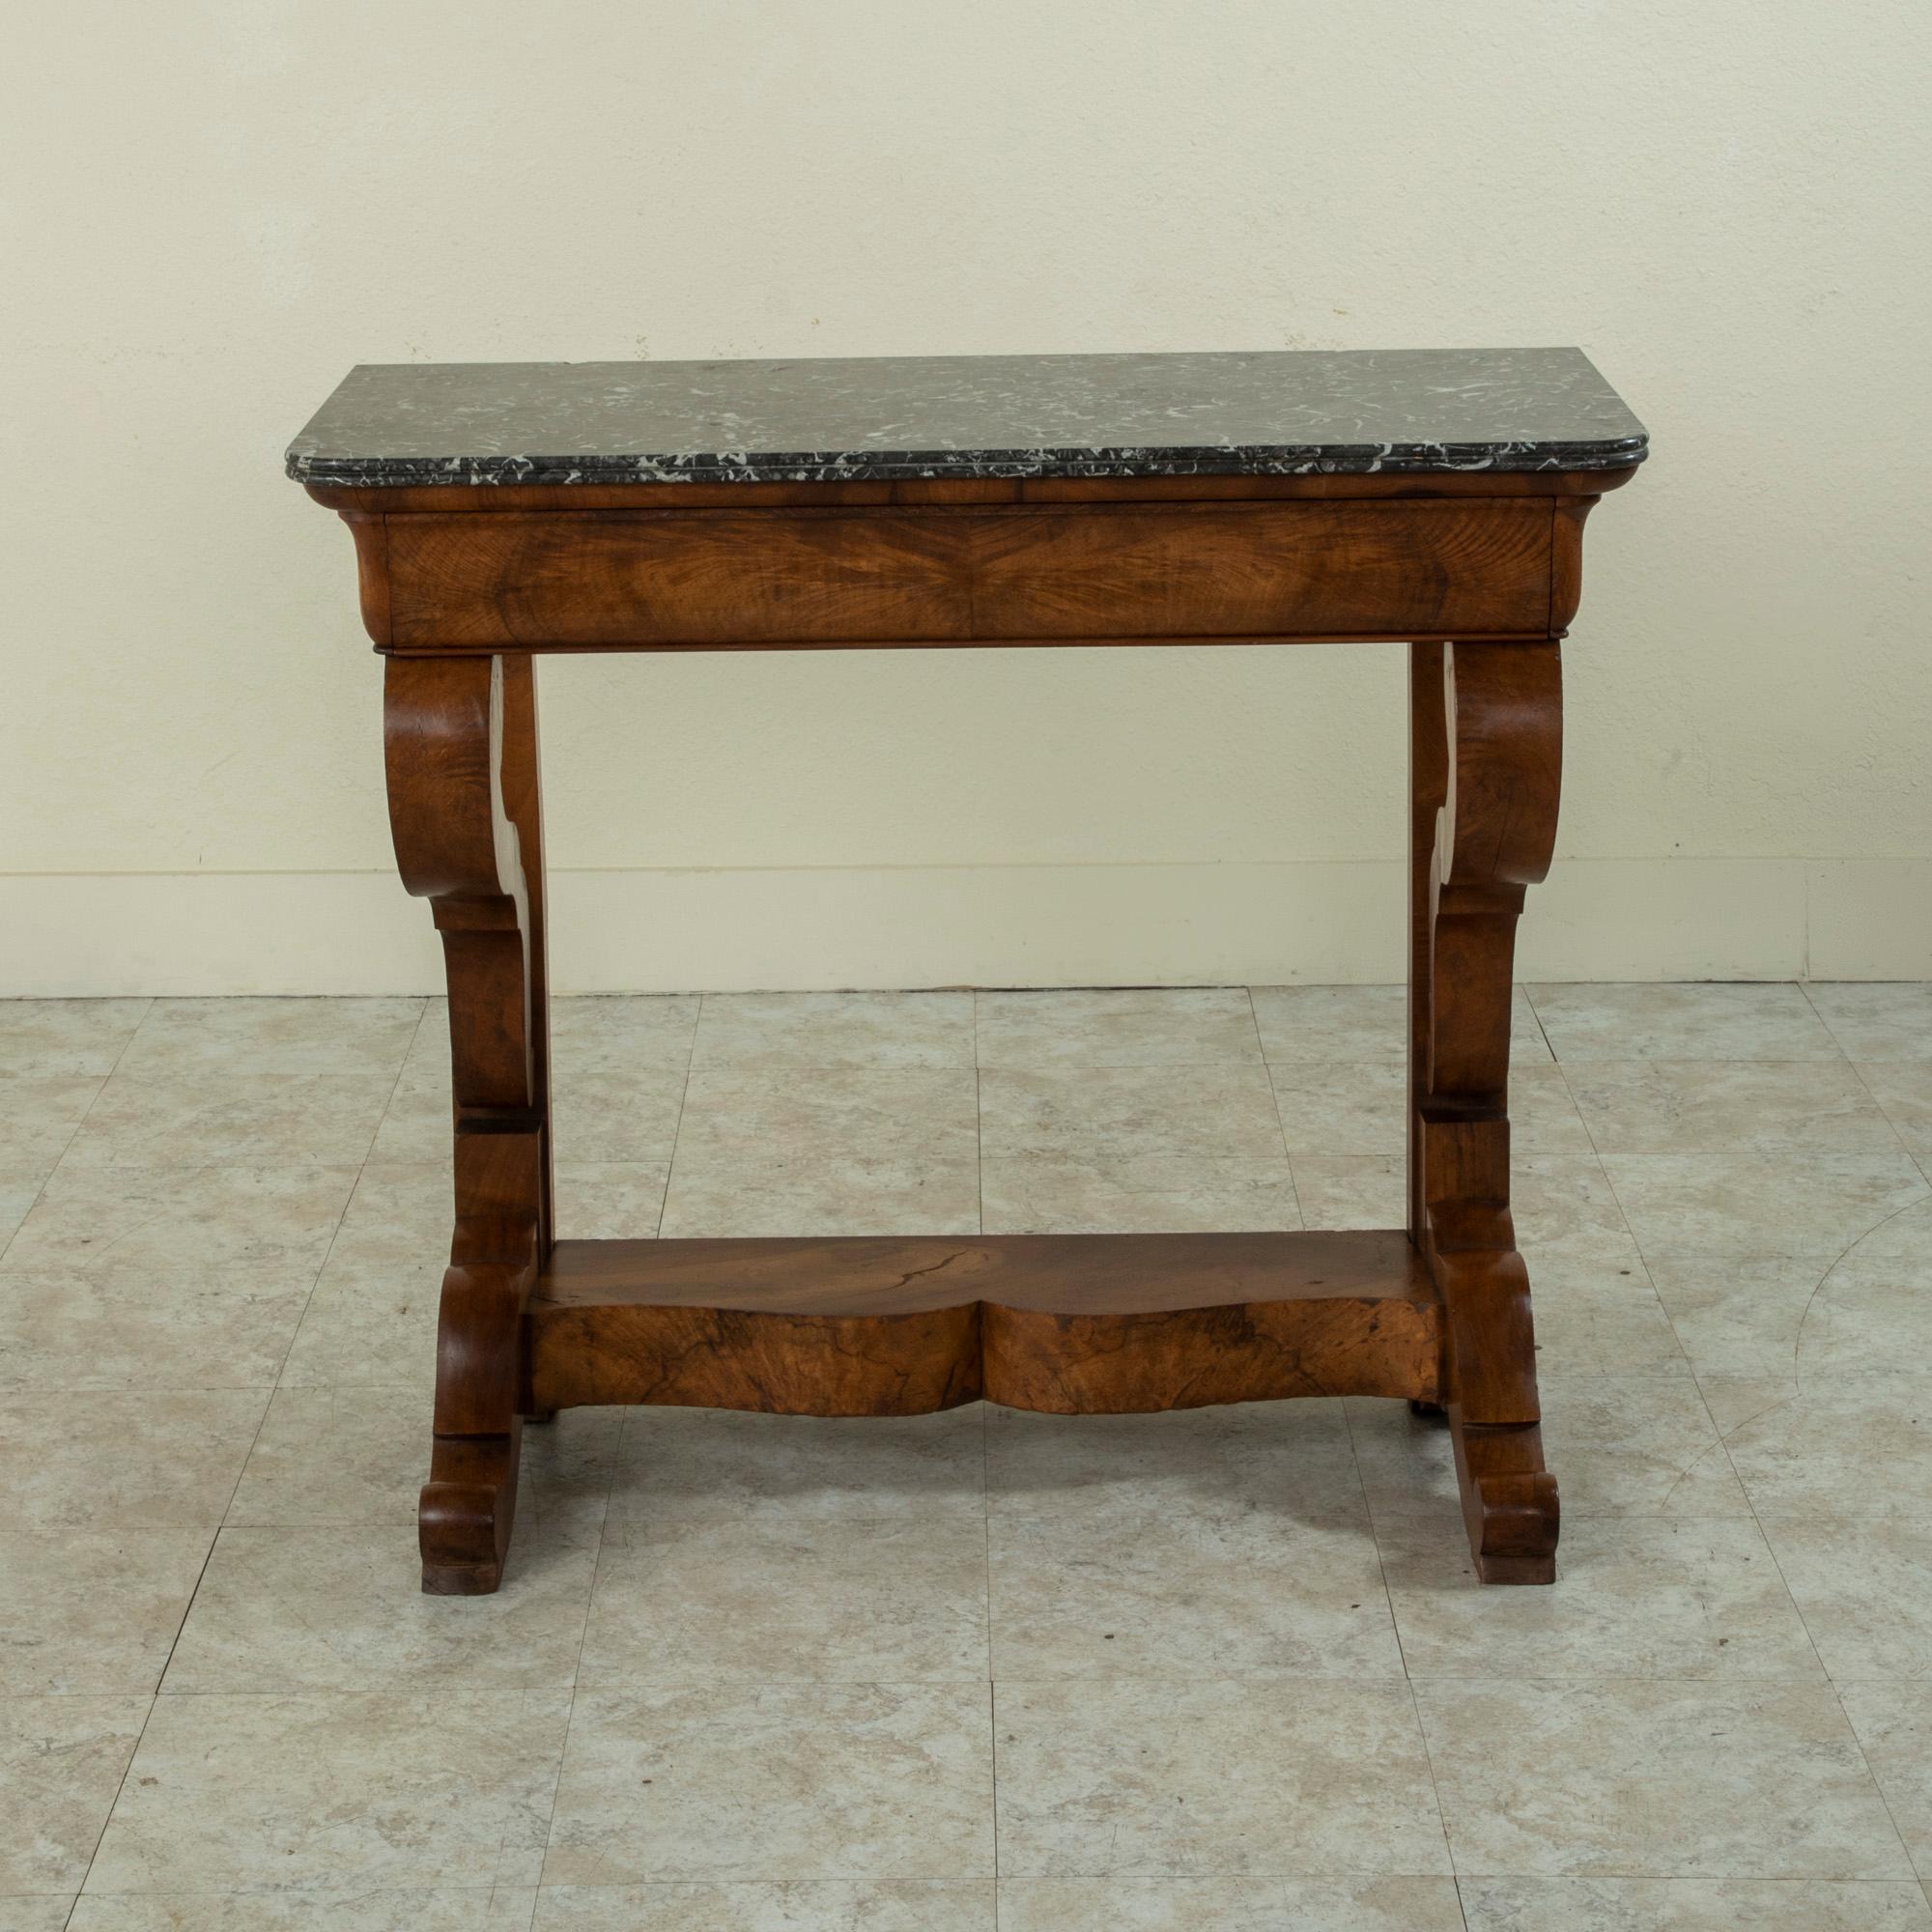 Cette table console de la période de la restauration française du début du XIXe siècle est construite en ronce de noyer et est dotée d'un plateau en marbre Saint Anne biseauté. Un seul tiroir forme parfaitement l'avant du tablier supérieur. Deux